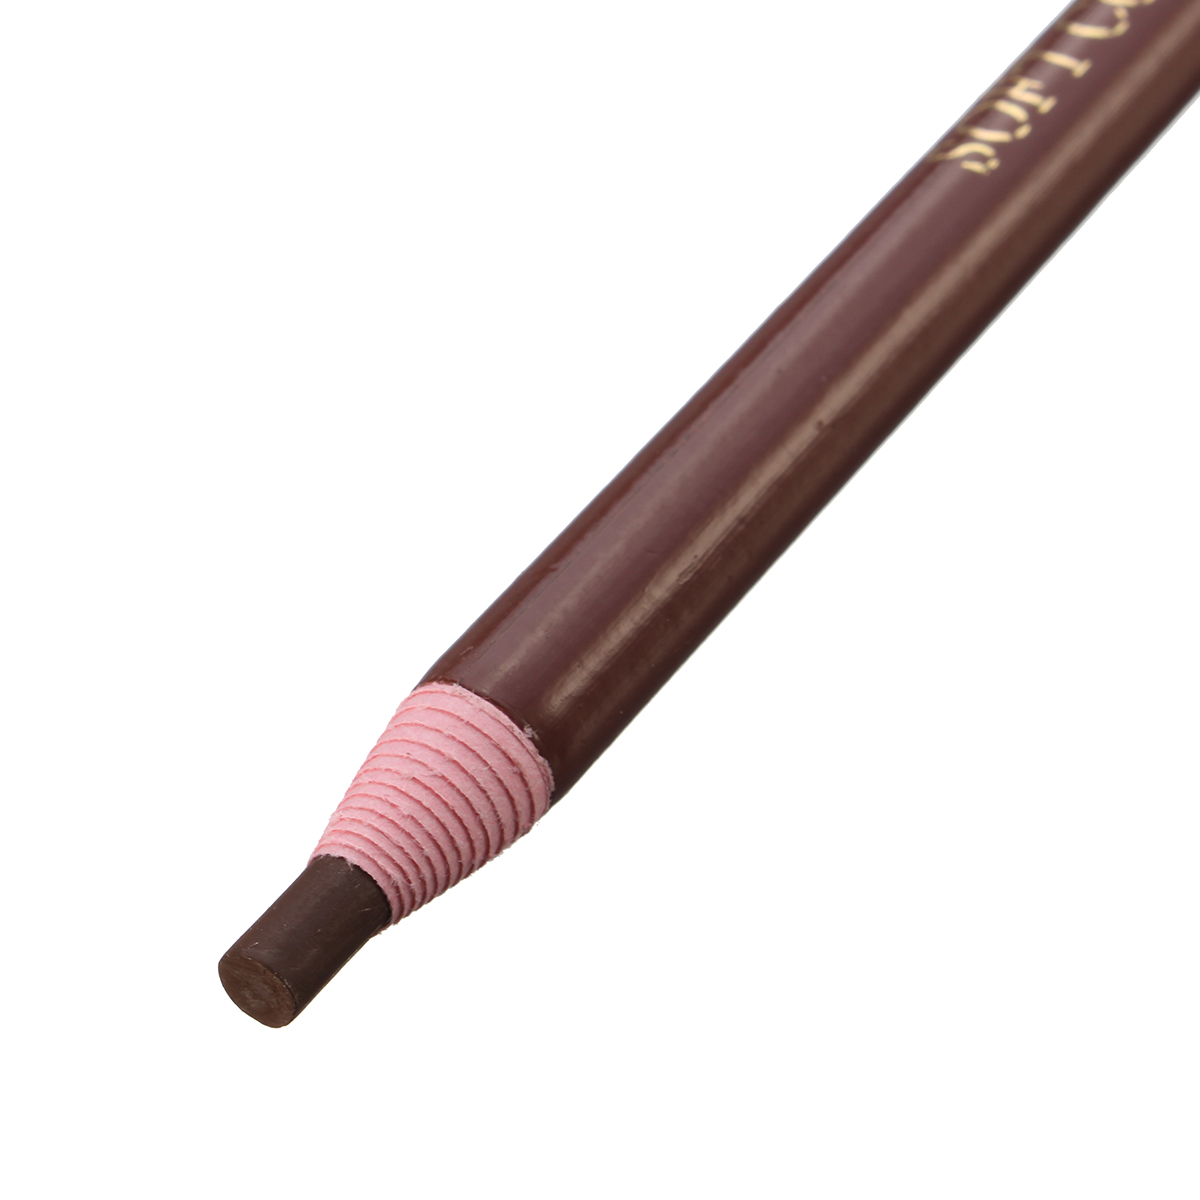 1pc Black Brown Eyebrow Pencil Pen Makeup Cosmetics Long Lasting No Fade 